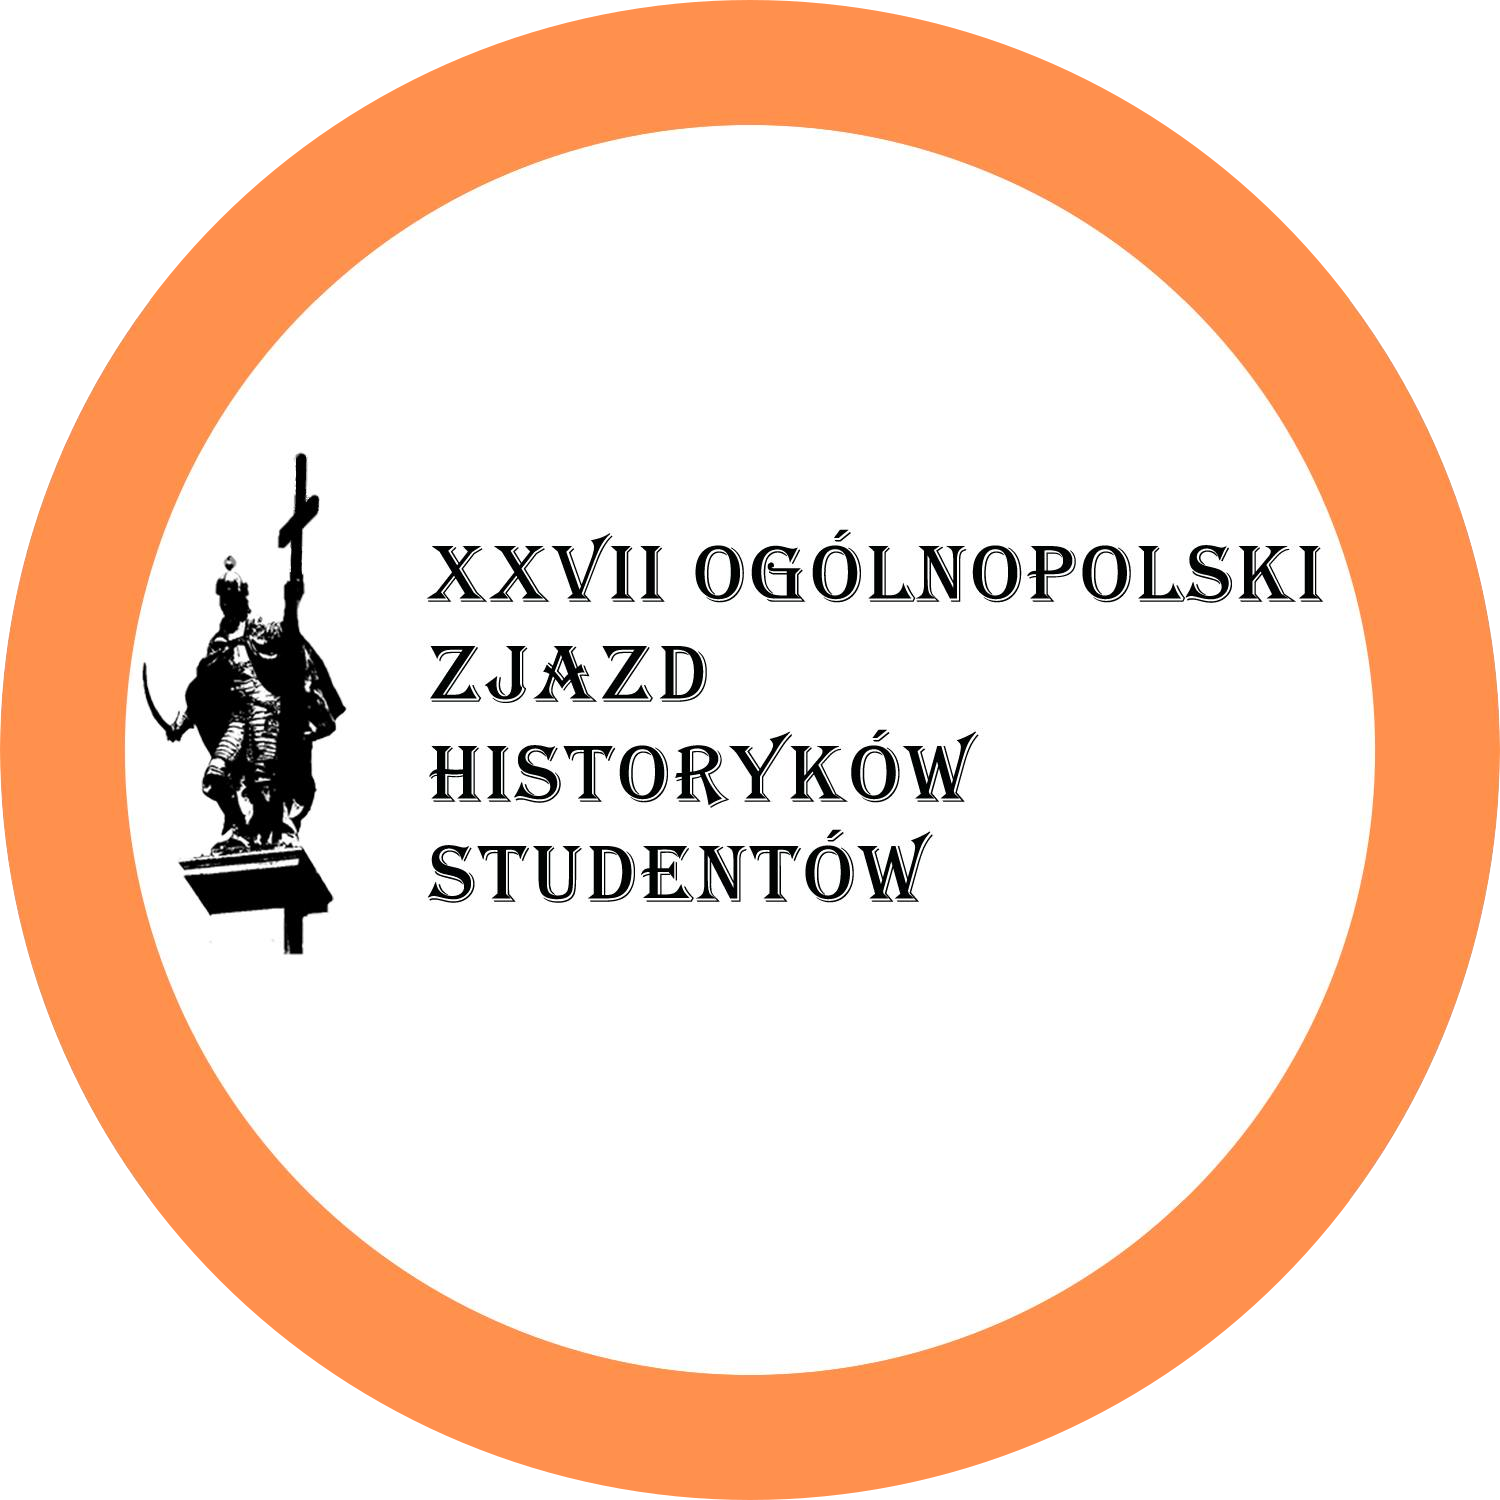 XXVII Ogólnopolski Zjazd Historyków Studentów (OZHS)